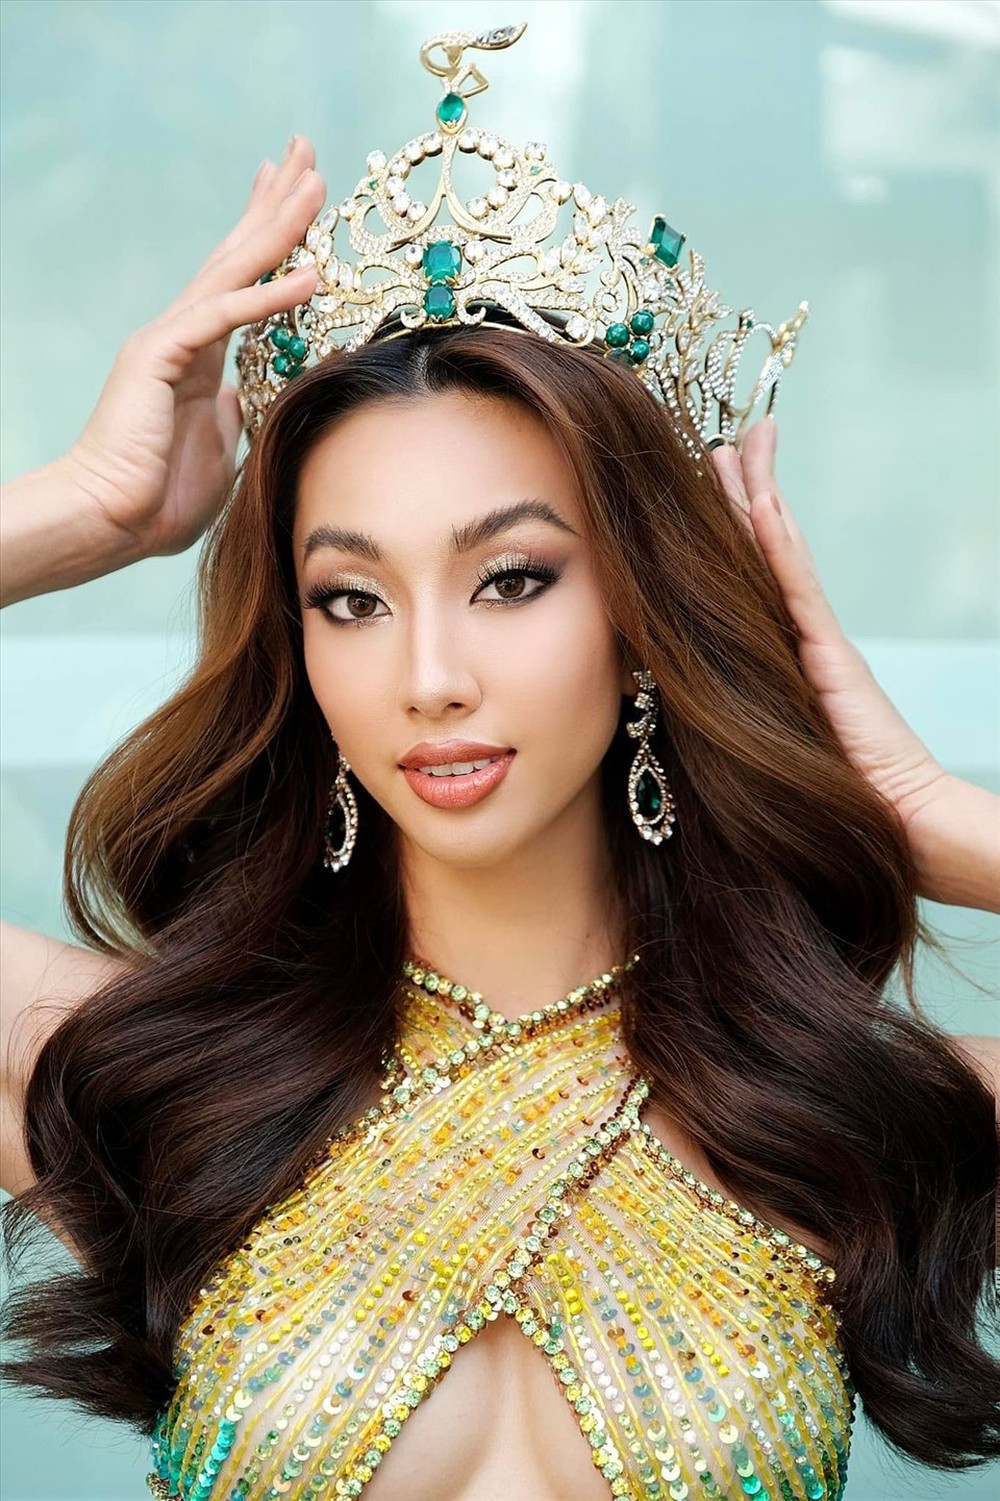 Tranh cãi Thùy Tiên gỡ bỏ danh hiệu Hoa hậu Hòa bình - Ảnh 2.